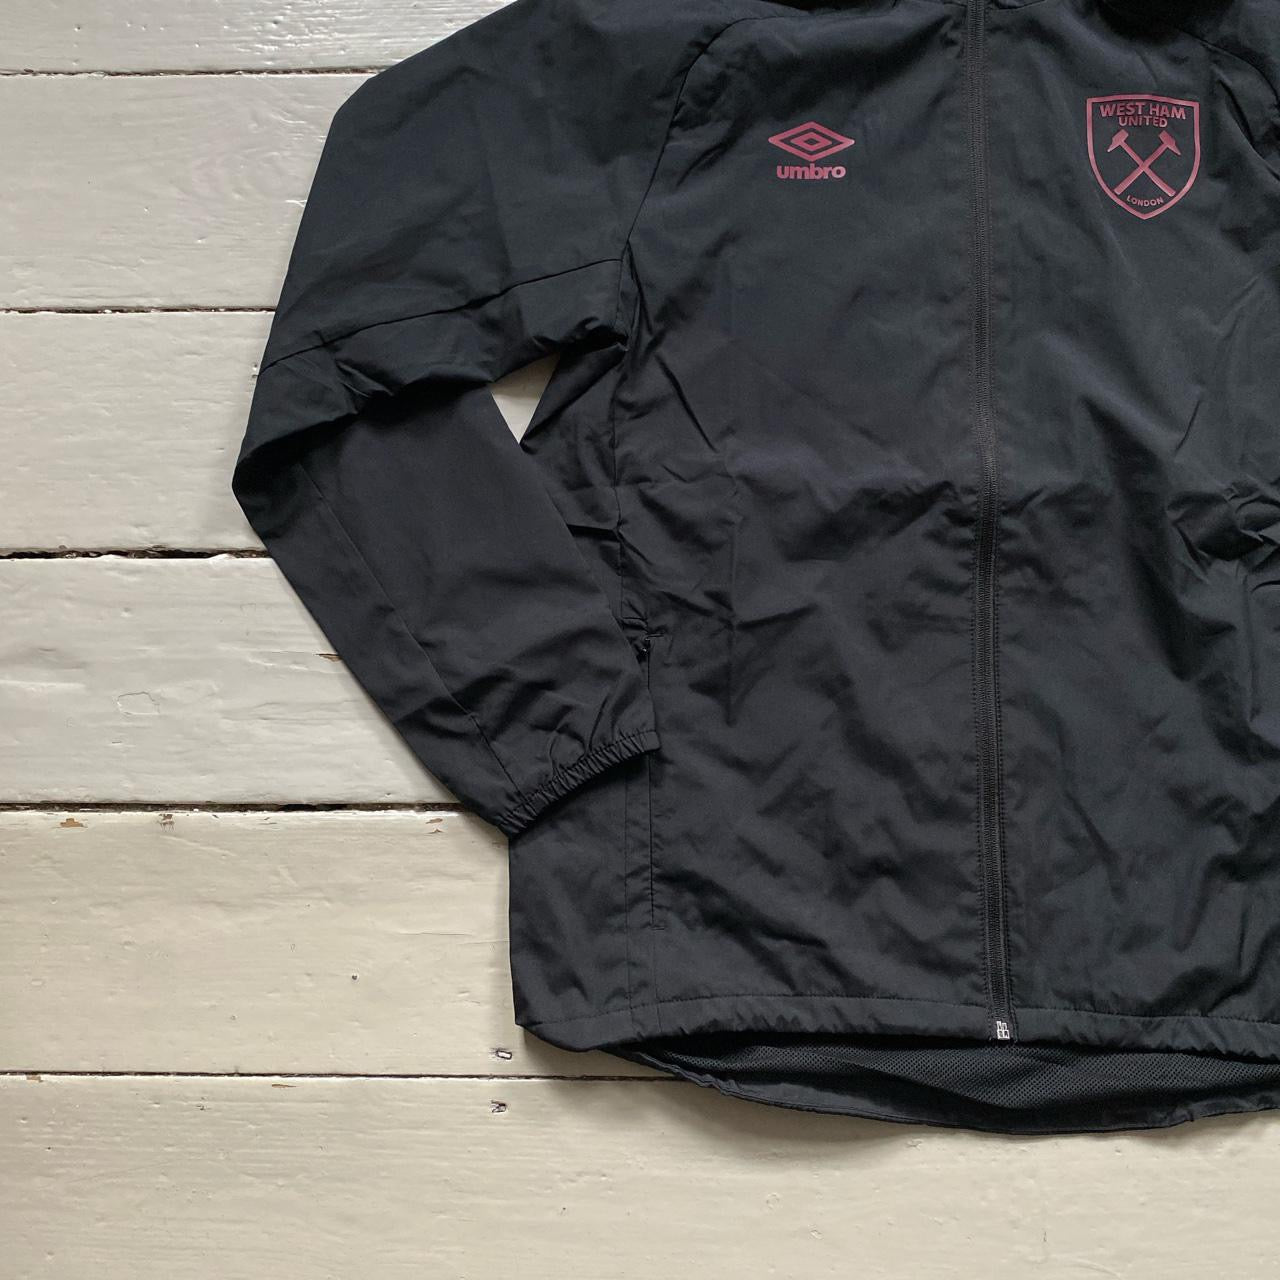 Umbro West Ham Shell Jacket (Medium)